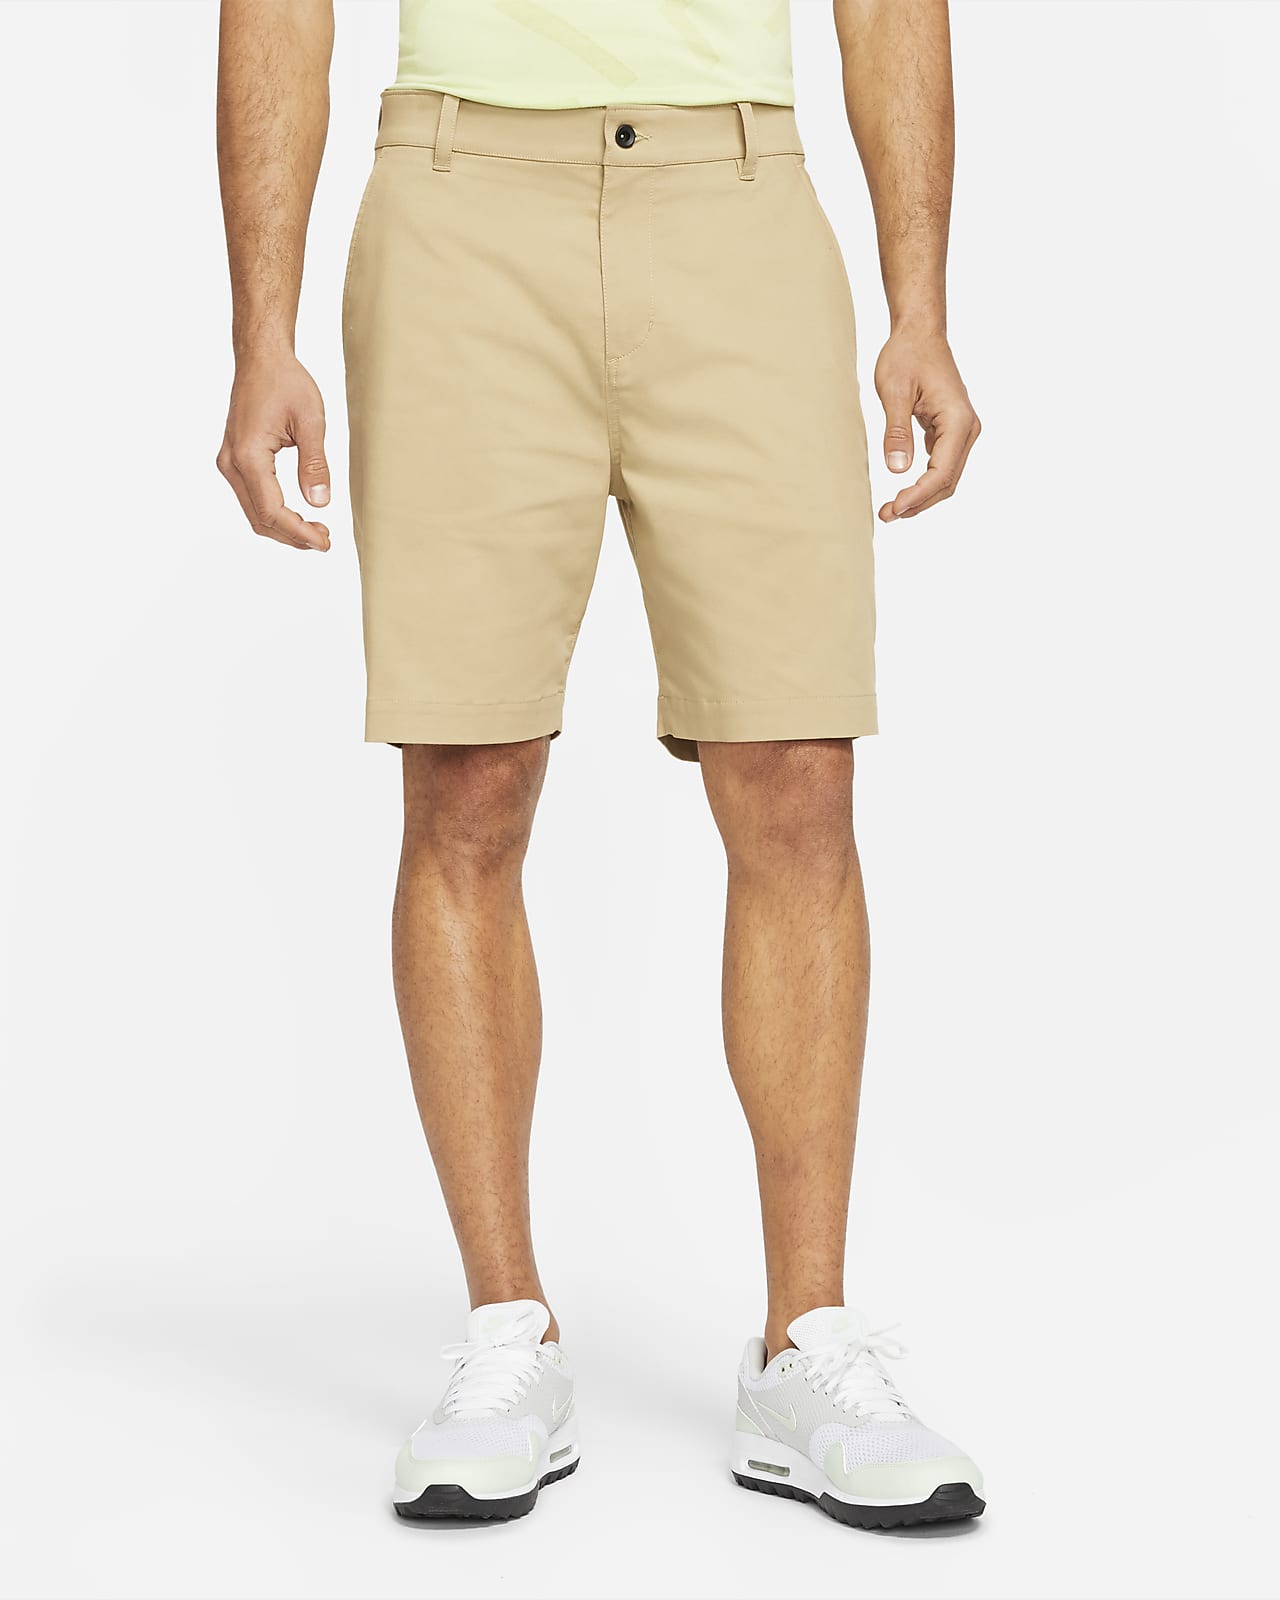 Shorts chinos de golf de 23 cm para hombre Nike Dri-FIT UV